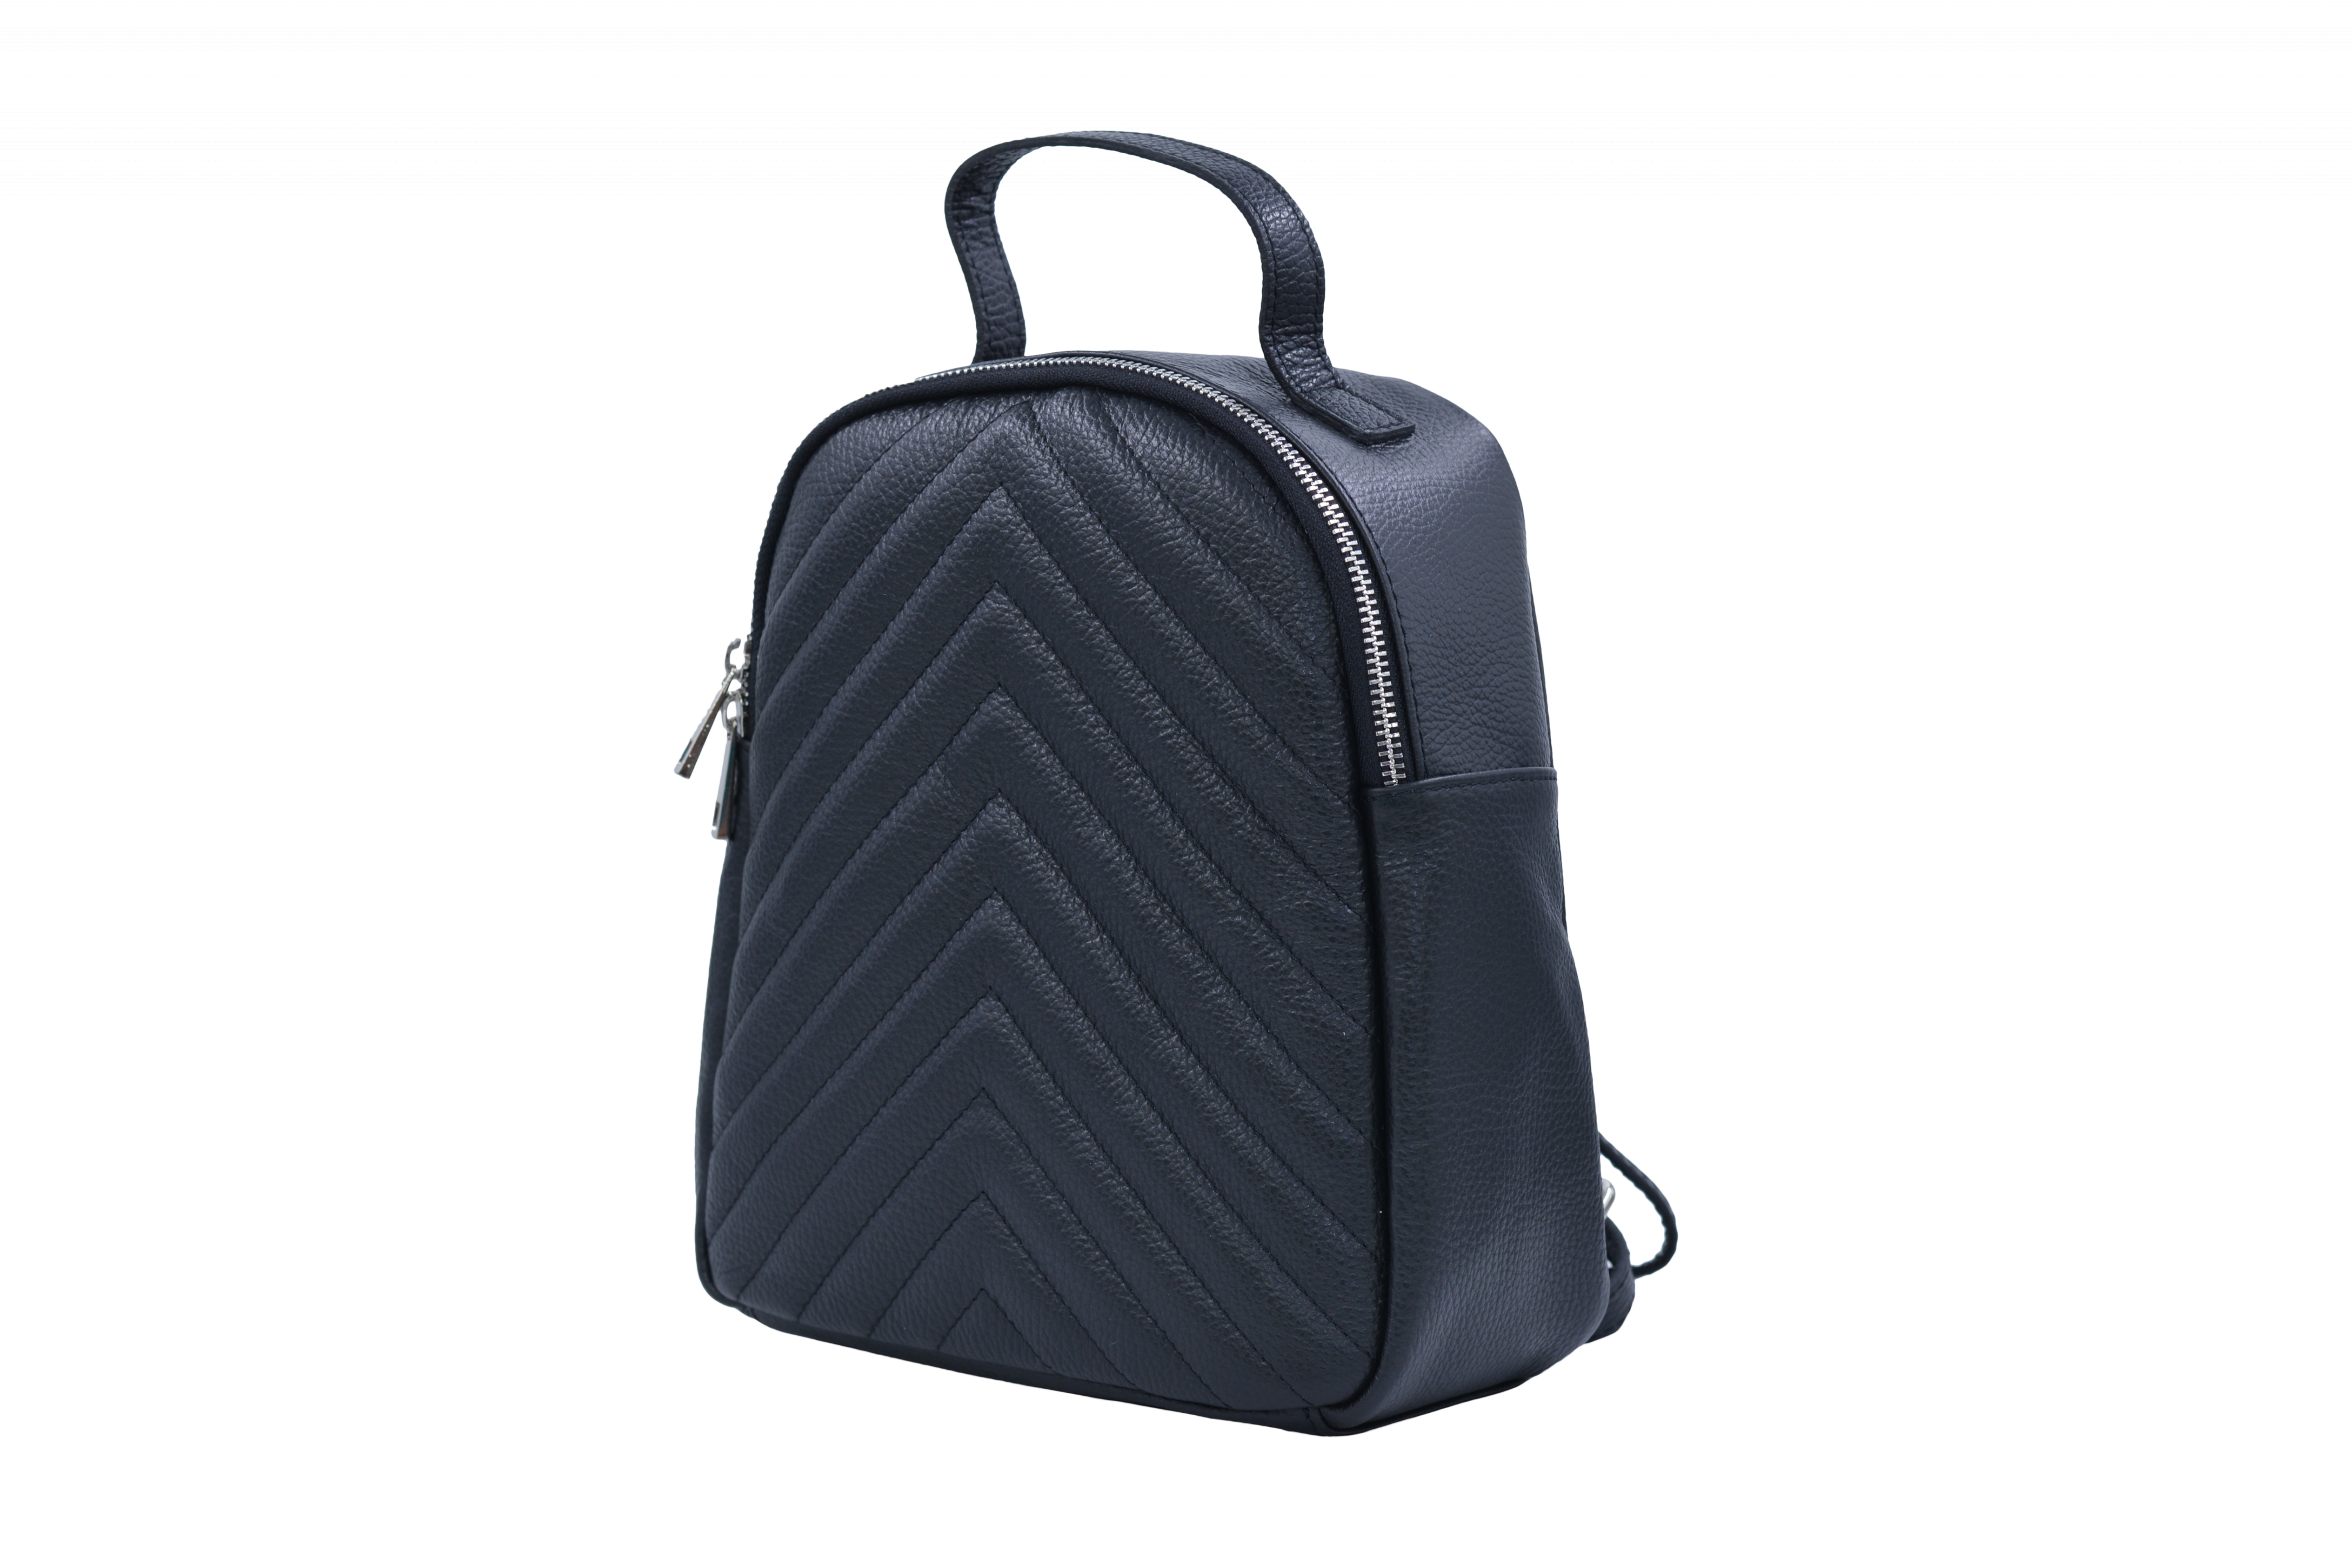 Dámská kožený batoh Černý, 10 x 23 x 27 (XT00-M4105-09DOL)